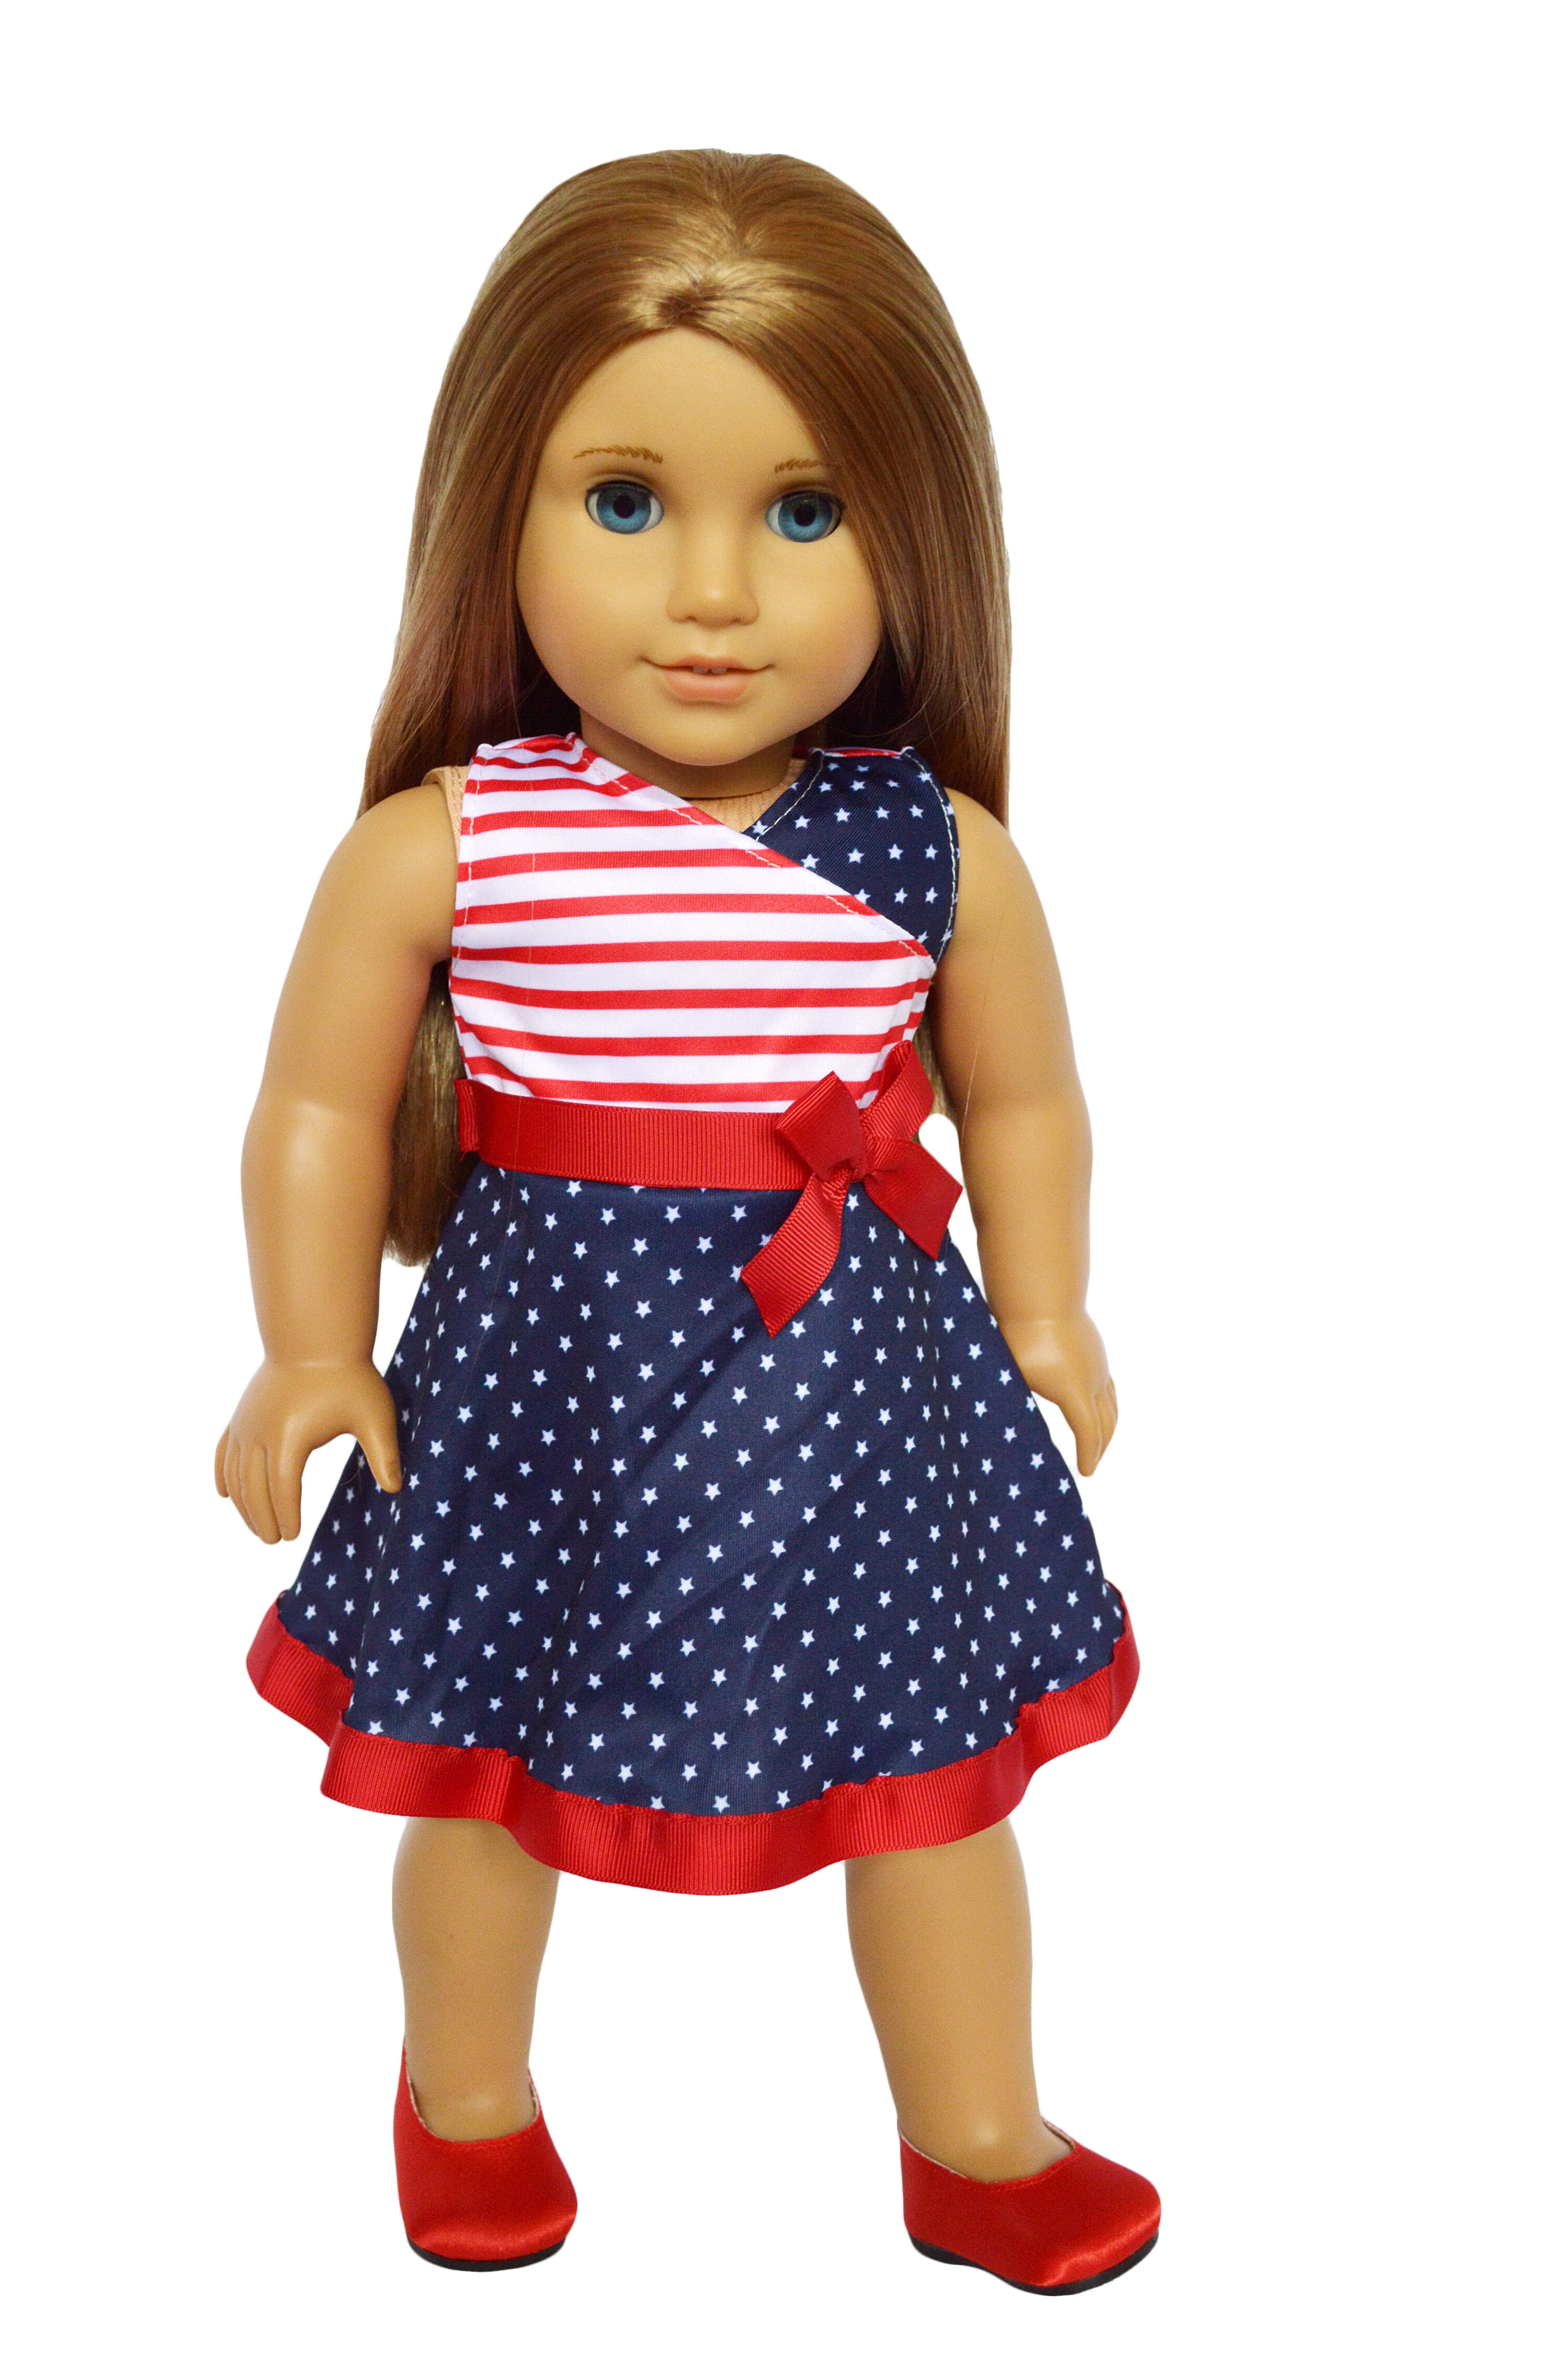 American girl dolls walmart canada